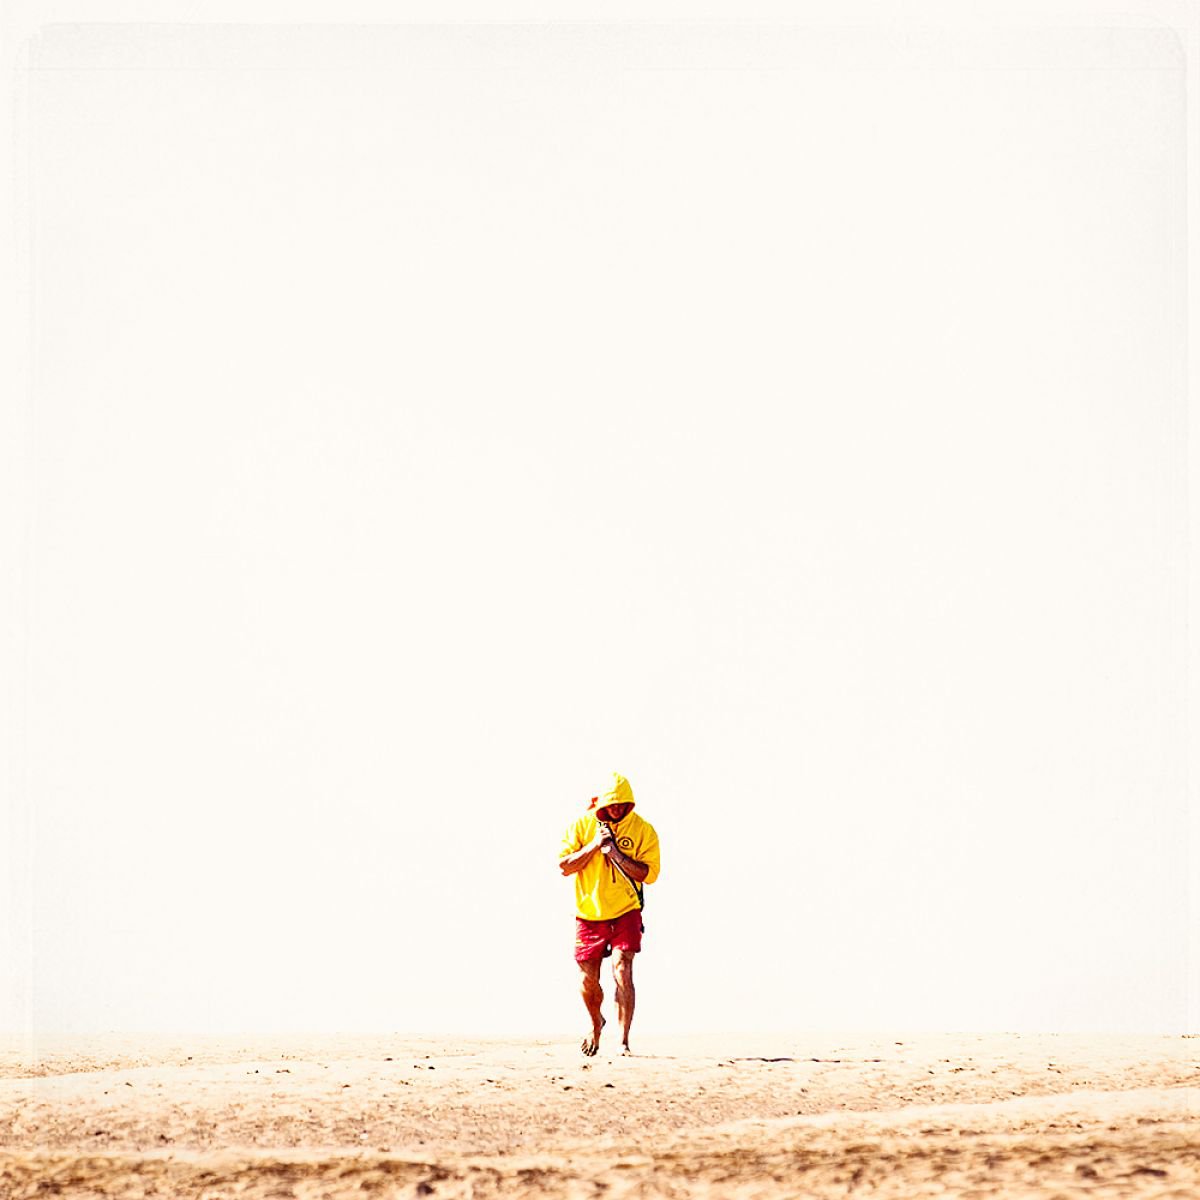 Lifeguard by Steve Deer